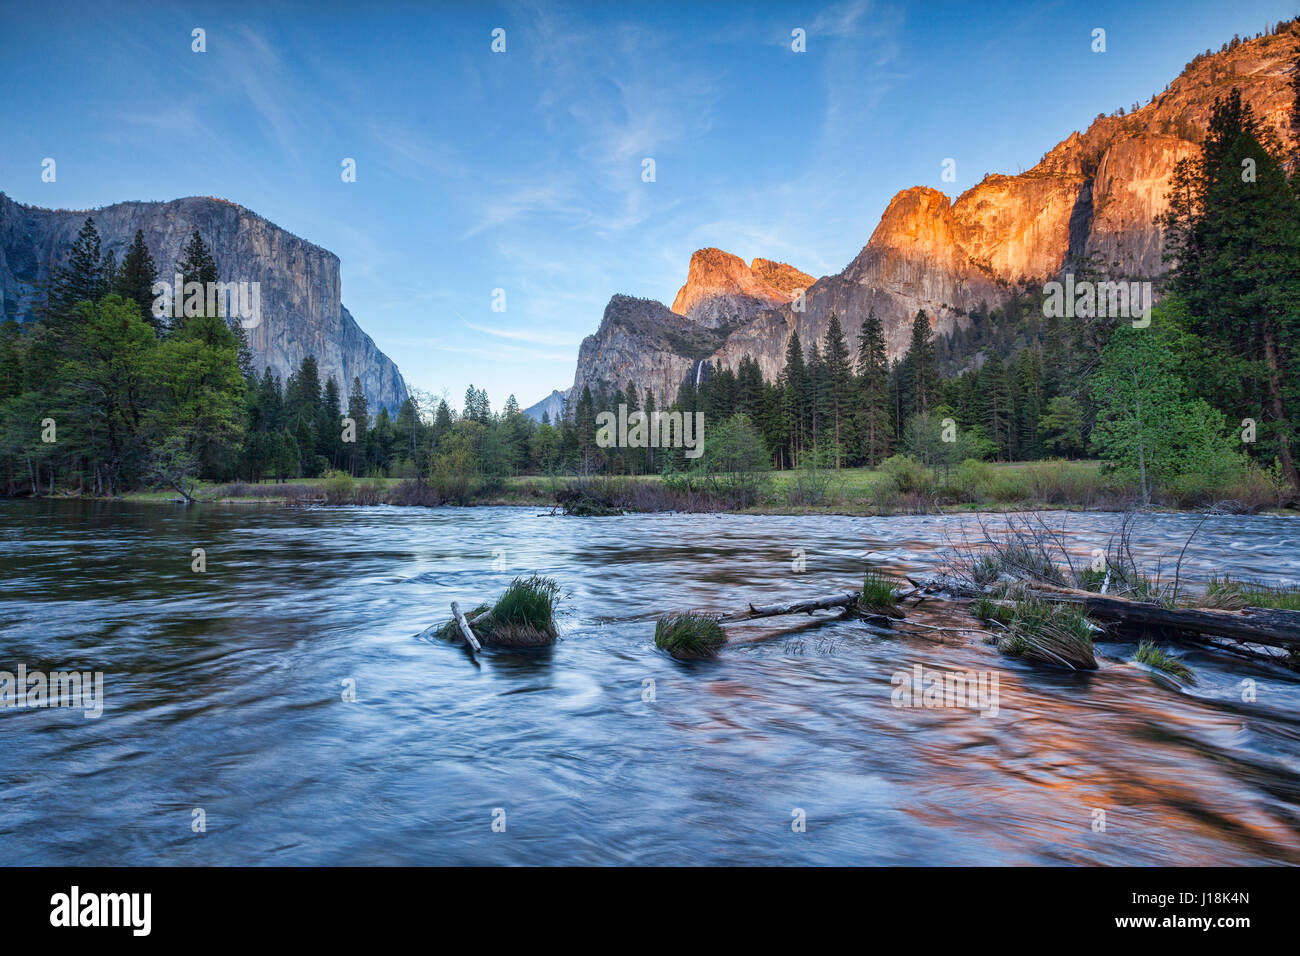 Una tarde tranquila cuando se pone el sol en el Parque Nacional Yosemite, la ley California, Estados Unidos. Foto de stock